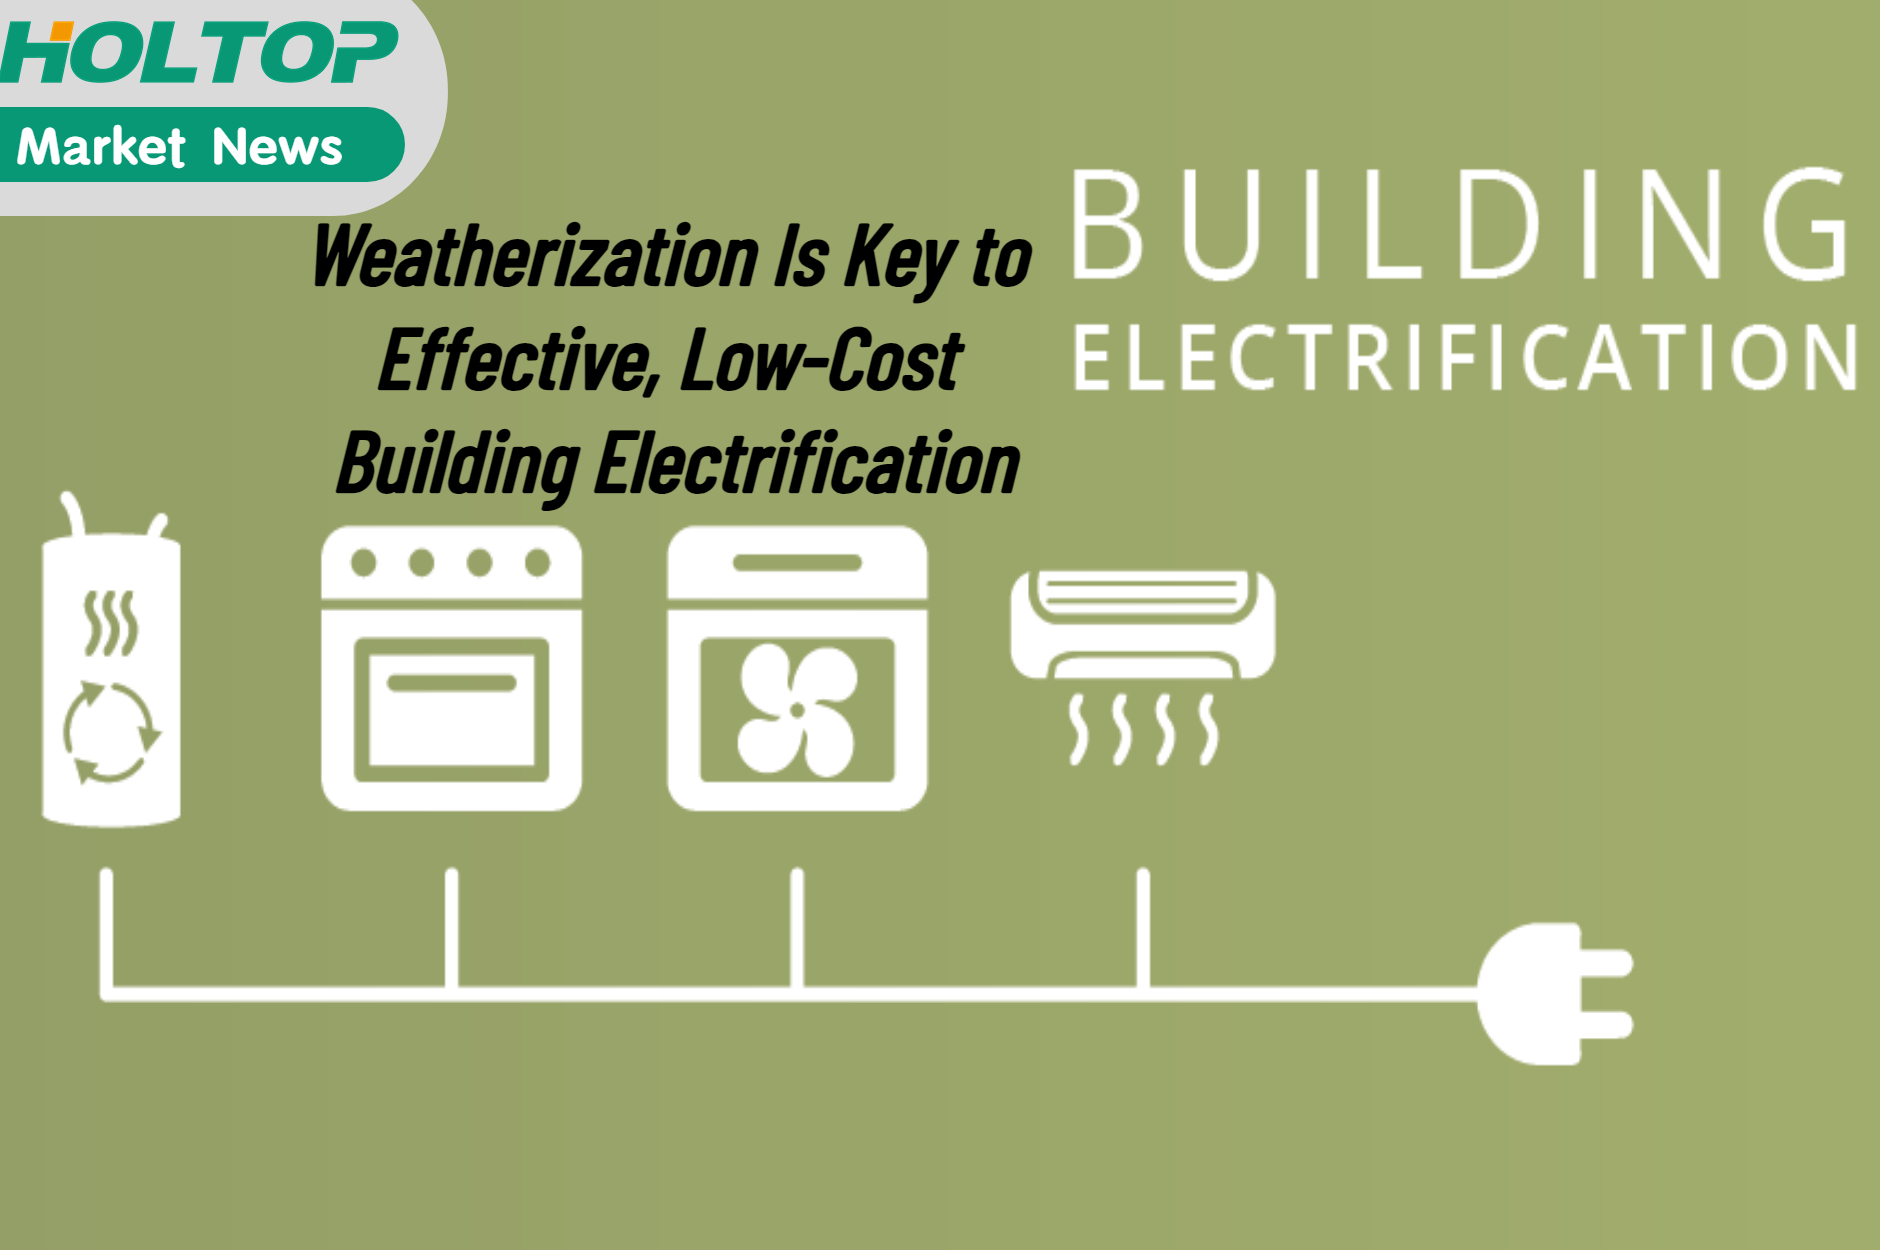 La resistenza agli agenti atmosferici è la chiave per un'elettrificazione degli edifici efficace ea basso costo